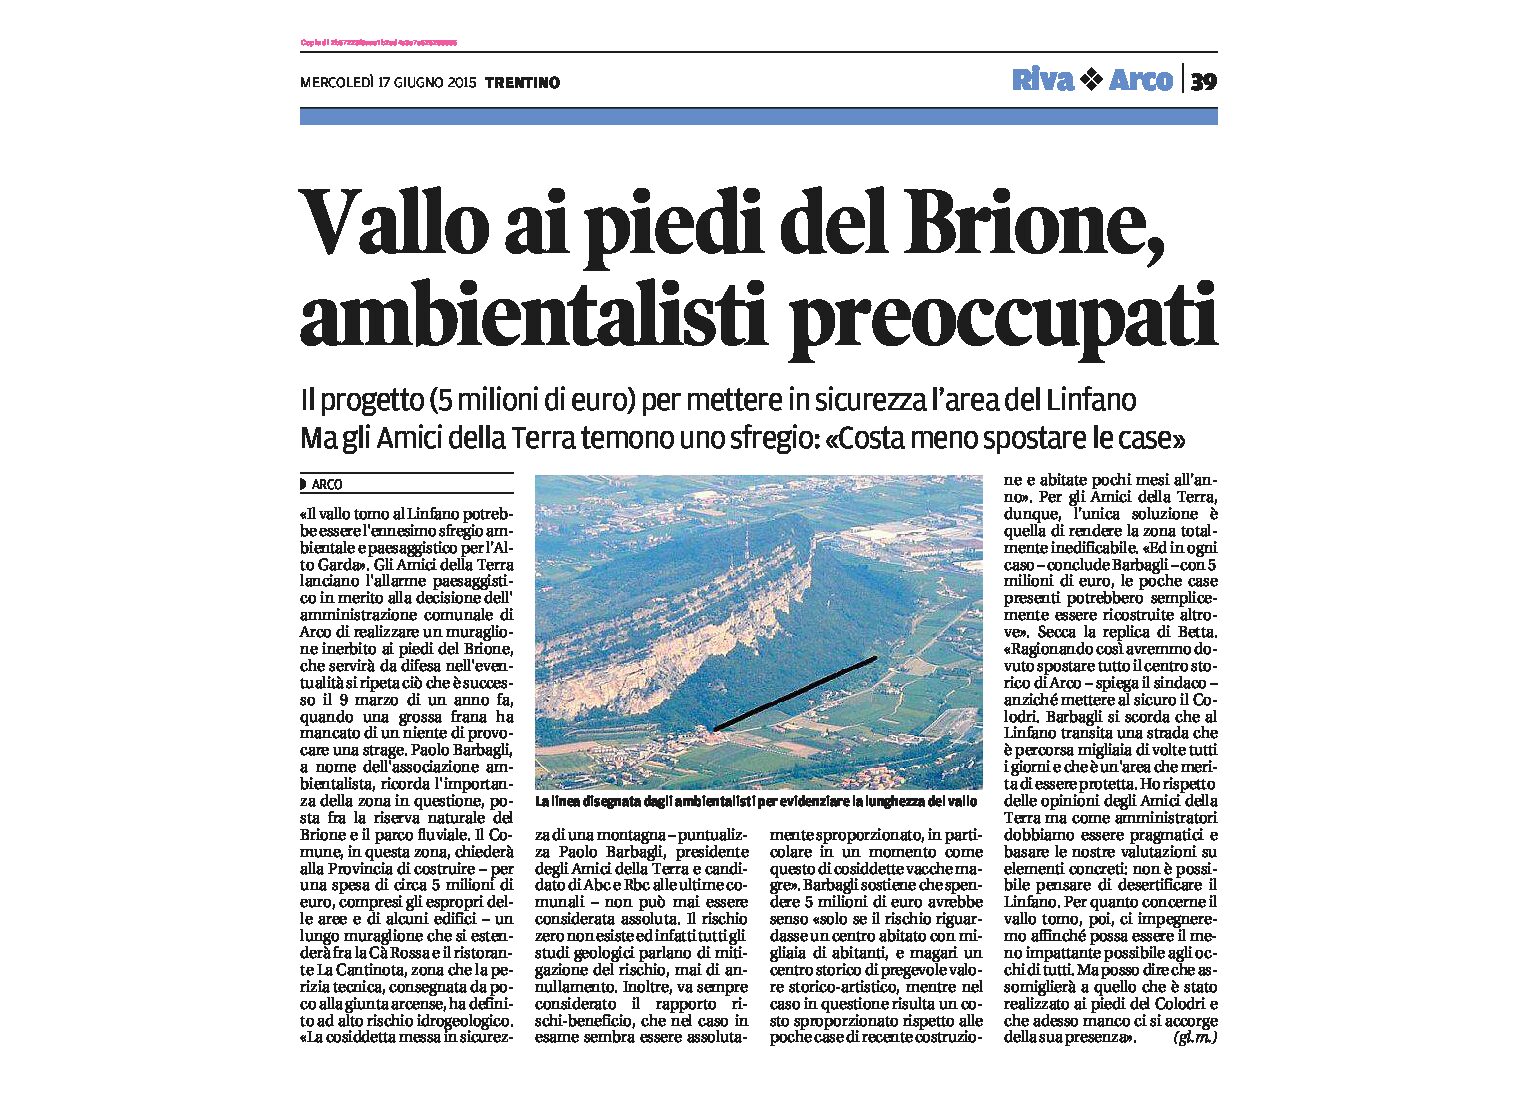 Arco: il vallo ai piedi del Brione preoccupa gli ambientalisti